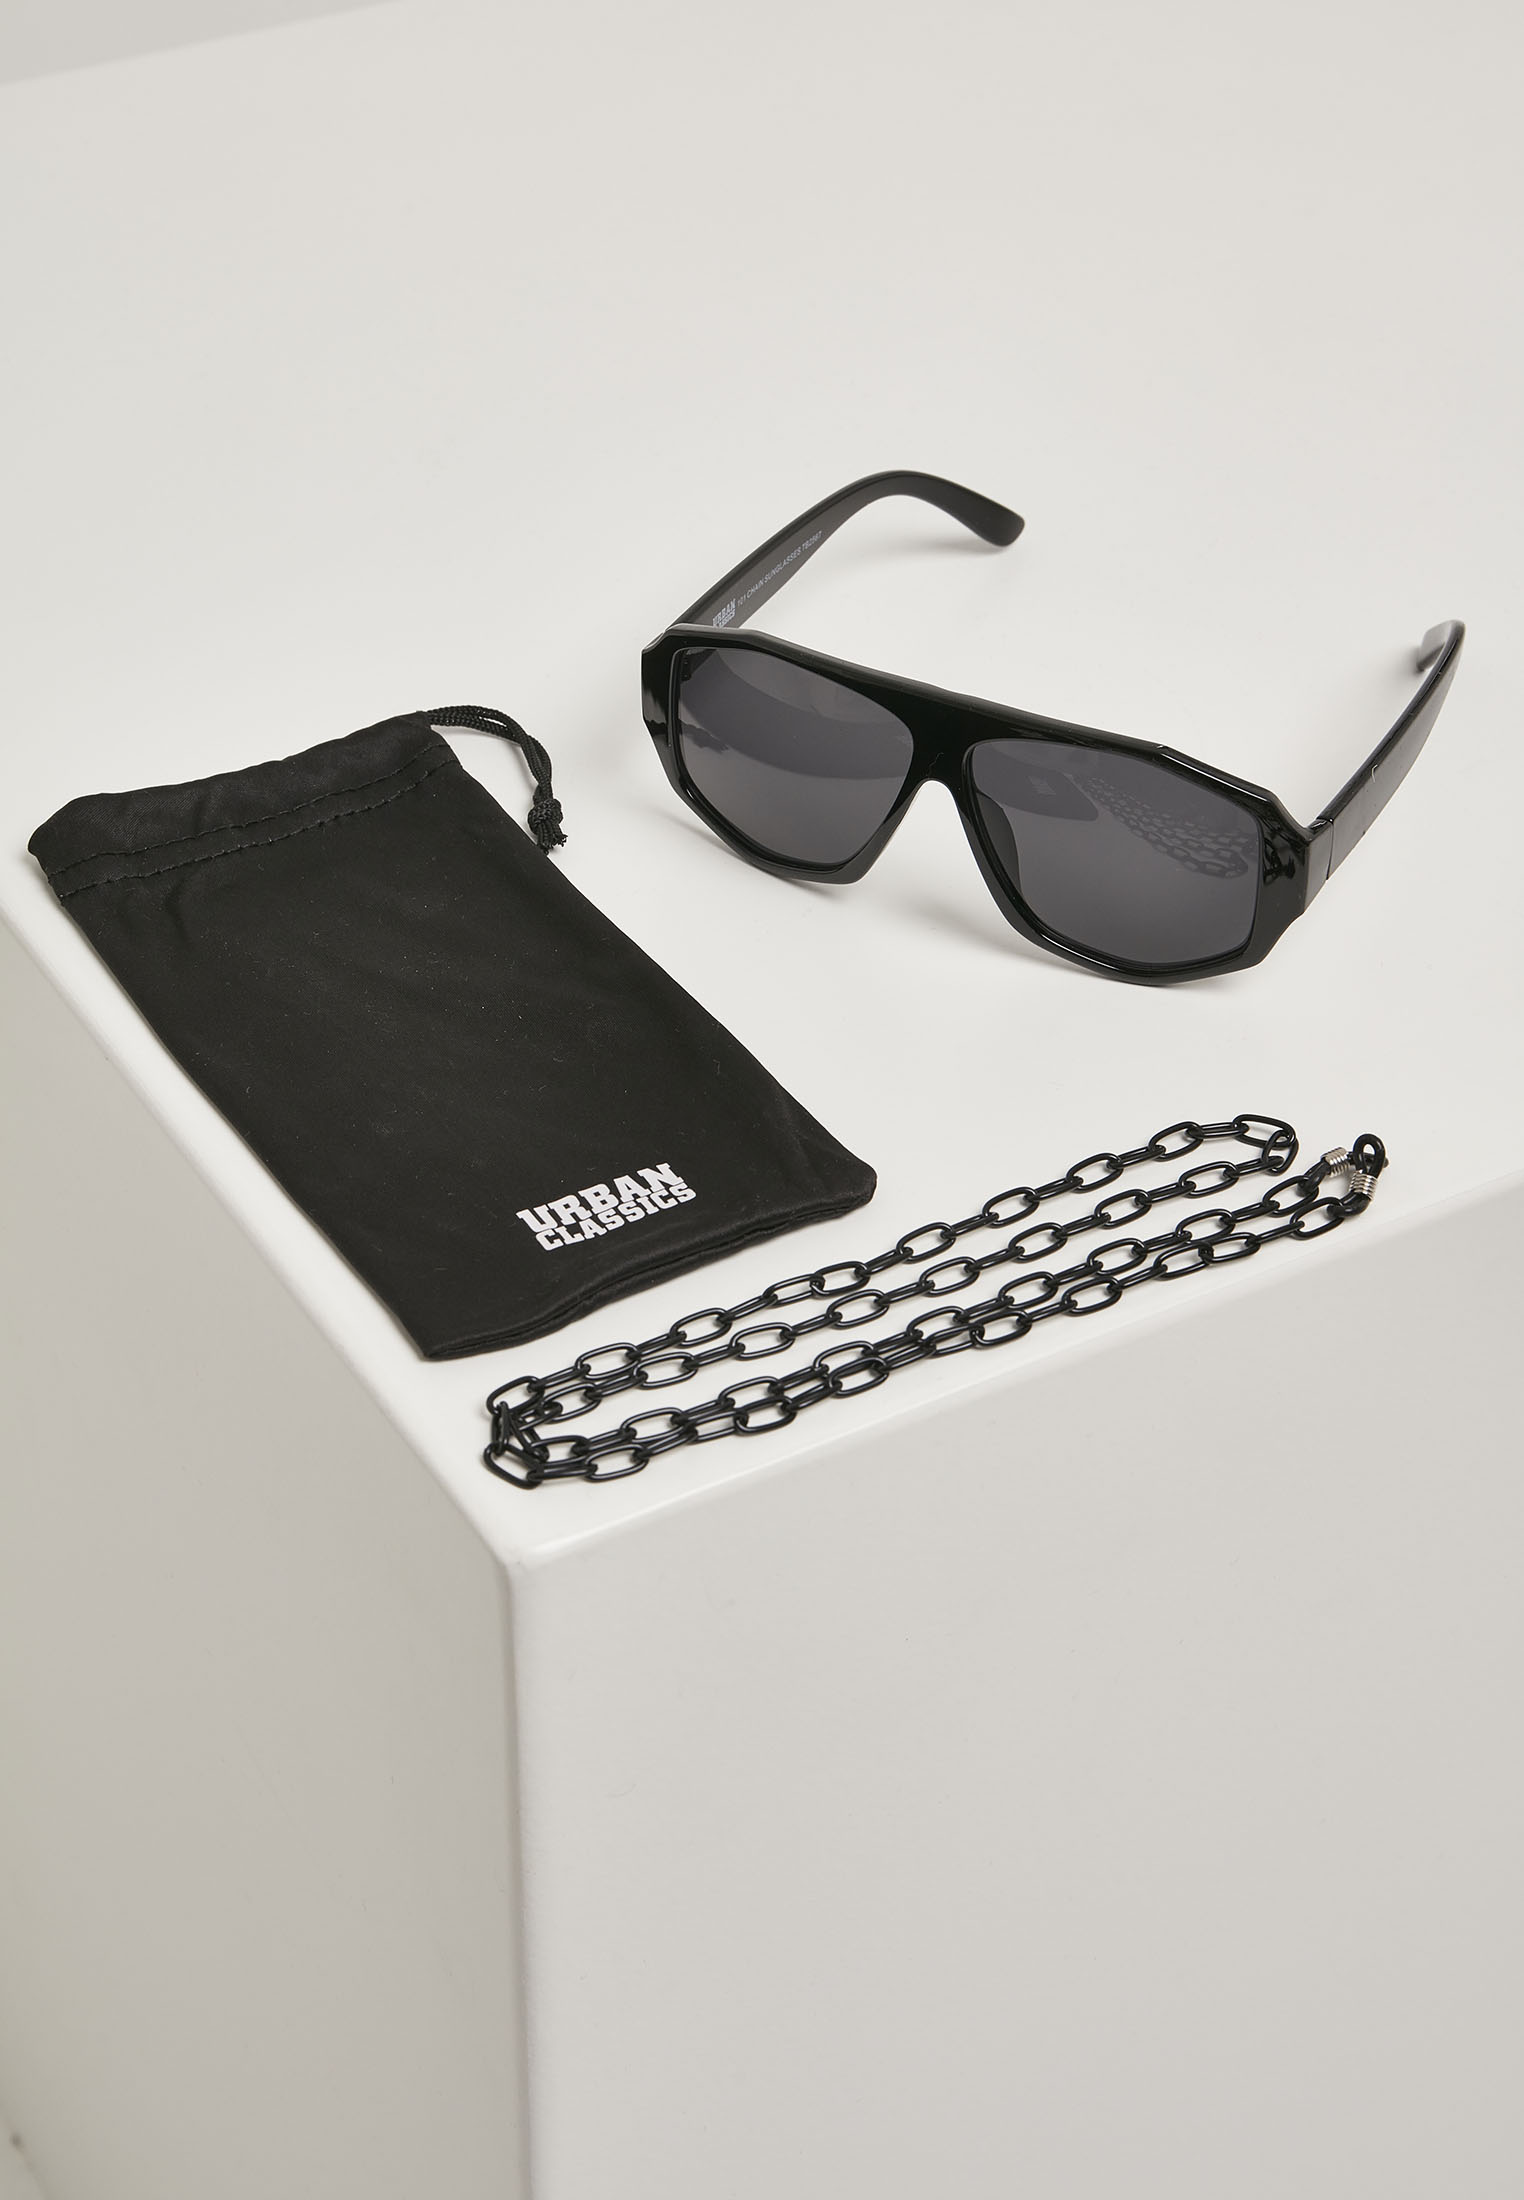 Sonnenbrillen 101 Chain Sunglasses in Farbe black/black